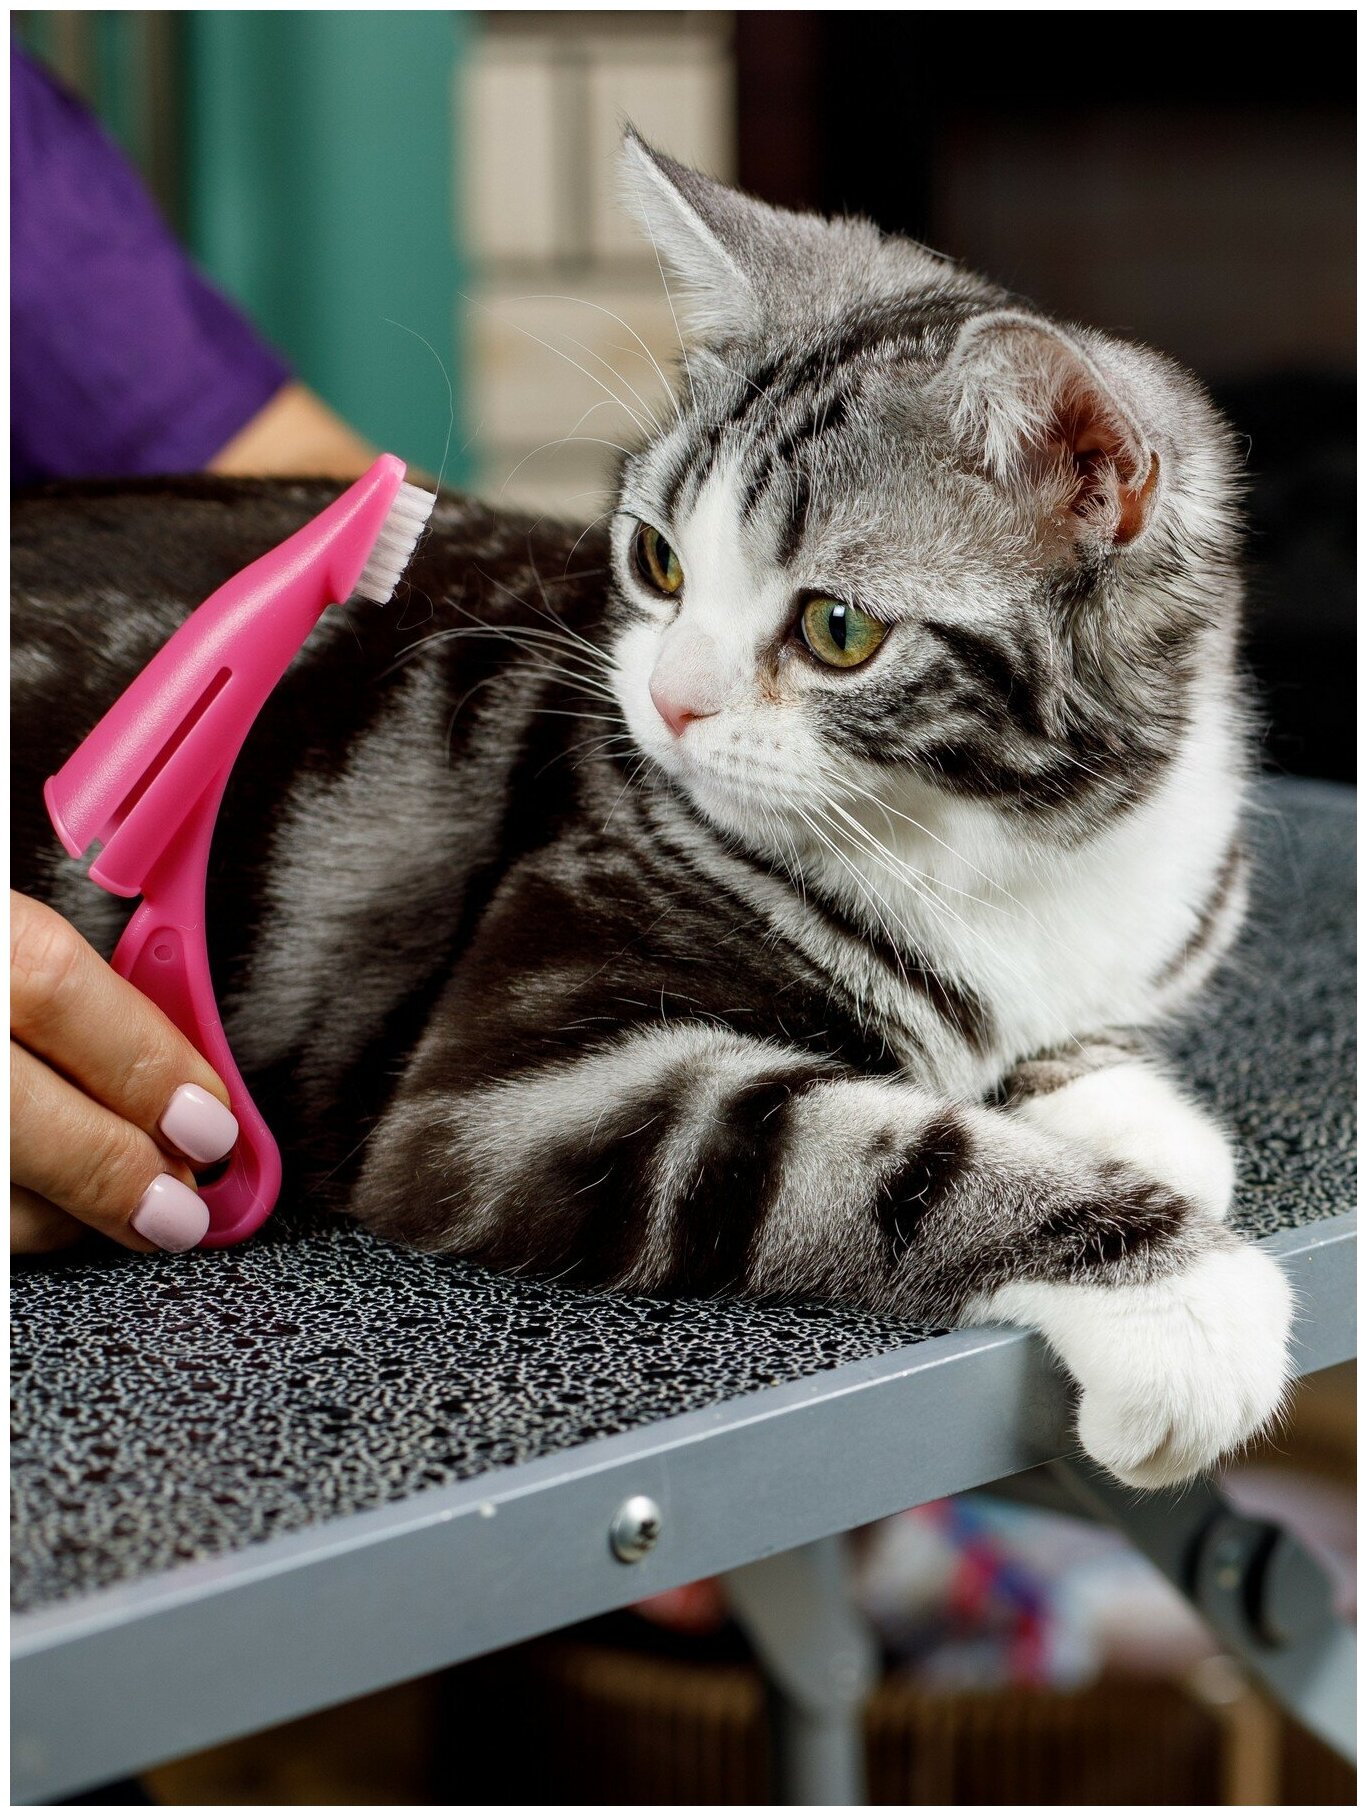 Зубная щетка для собак и кошек Japan Premium Pet анатомическая с ручкой для снятия налета, цвет розовый. - фотография № 10